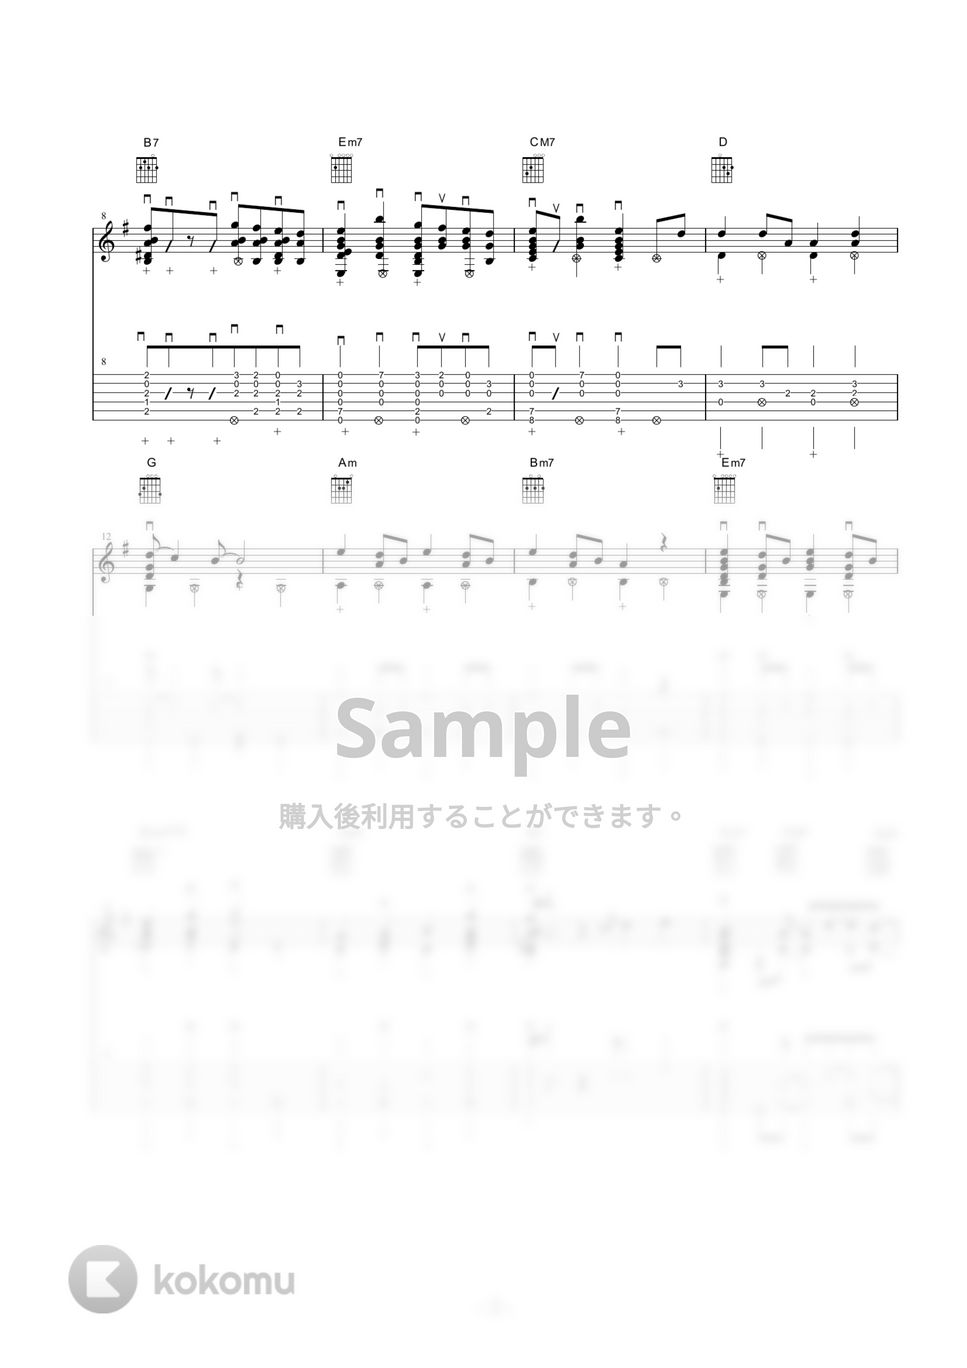 Aimer - 残響散歌 Short ver. (鬼滅の刃 遊郭編) by Masashi Kotsuji